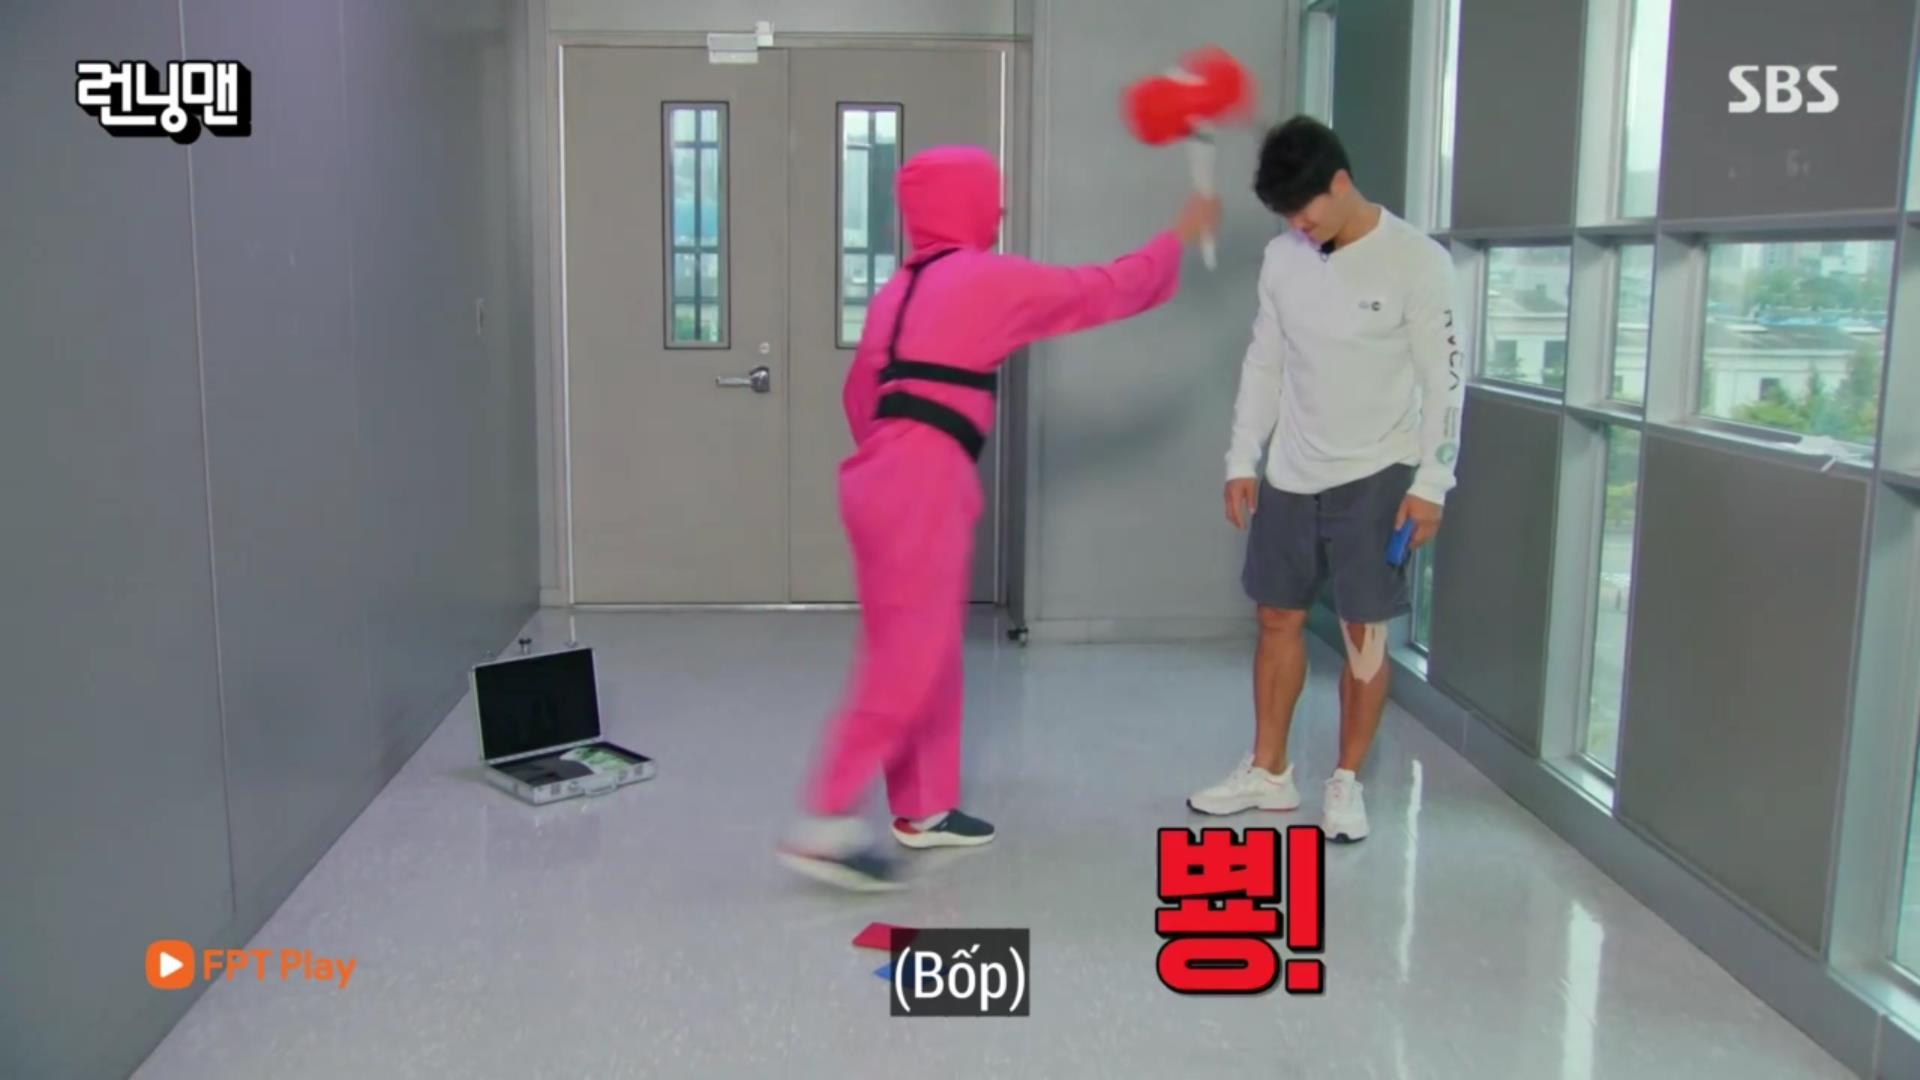 Running Man lầy lội mô phỏng Squid Game, Jong Kook lại bị bắt quả tang tạo loveline với Ji Hyo - Ảnh 2.